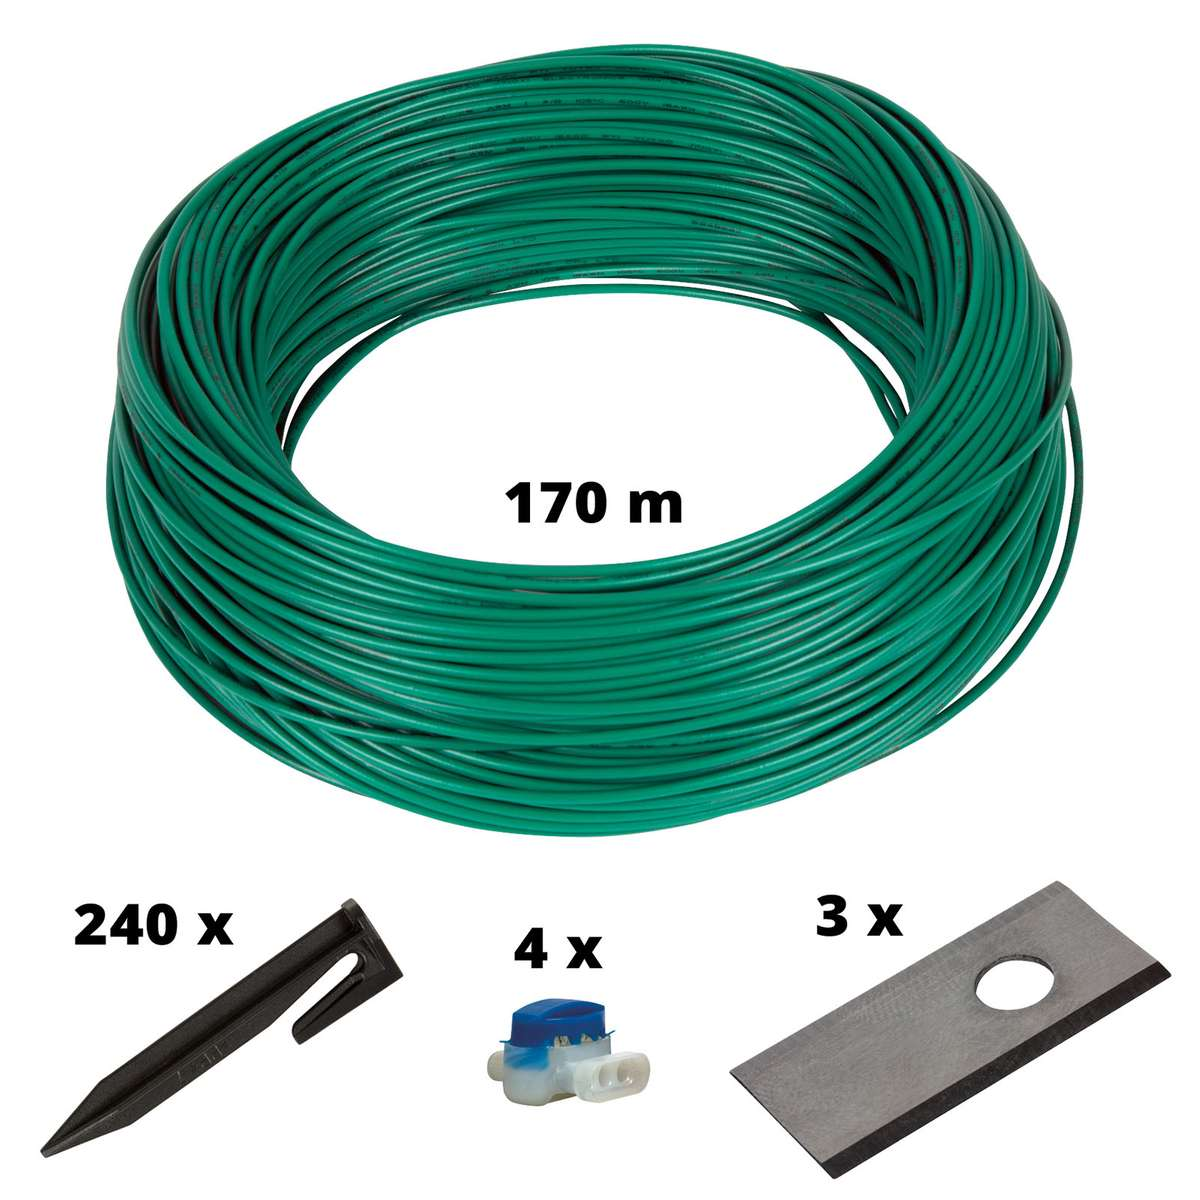 Mähroboter-Zubehör, 700m2 EINHELL Cable Kit Mehrfarbig